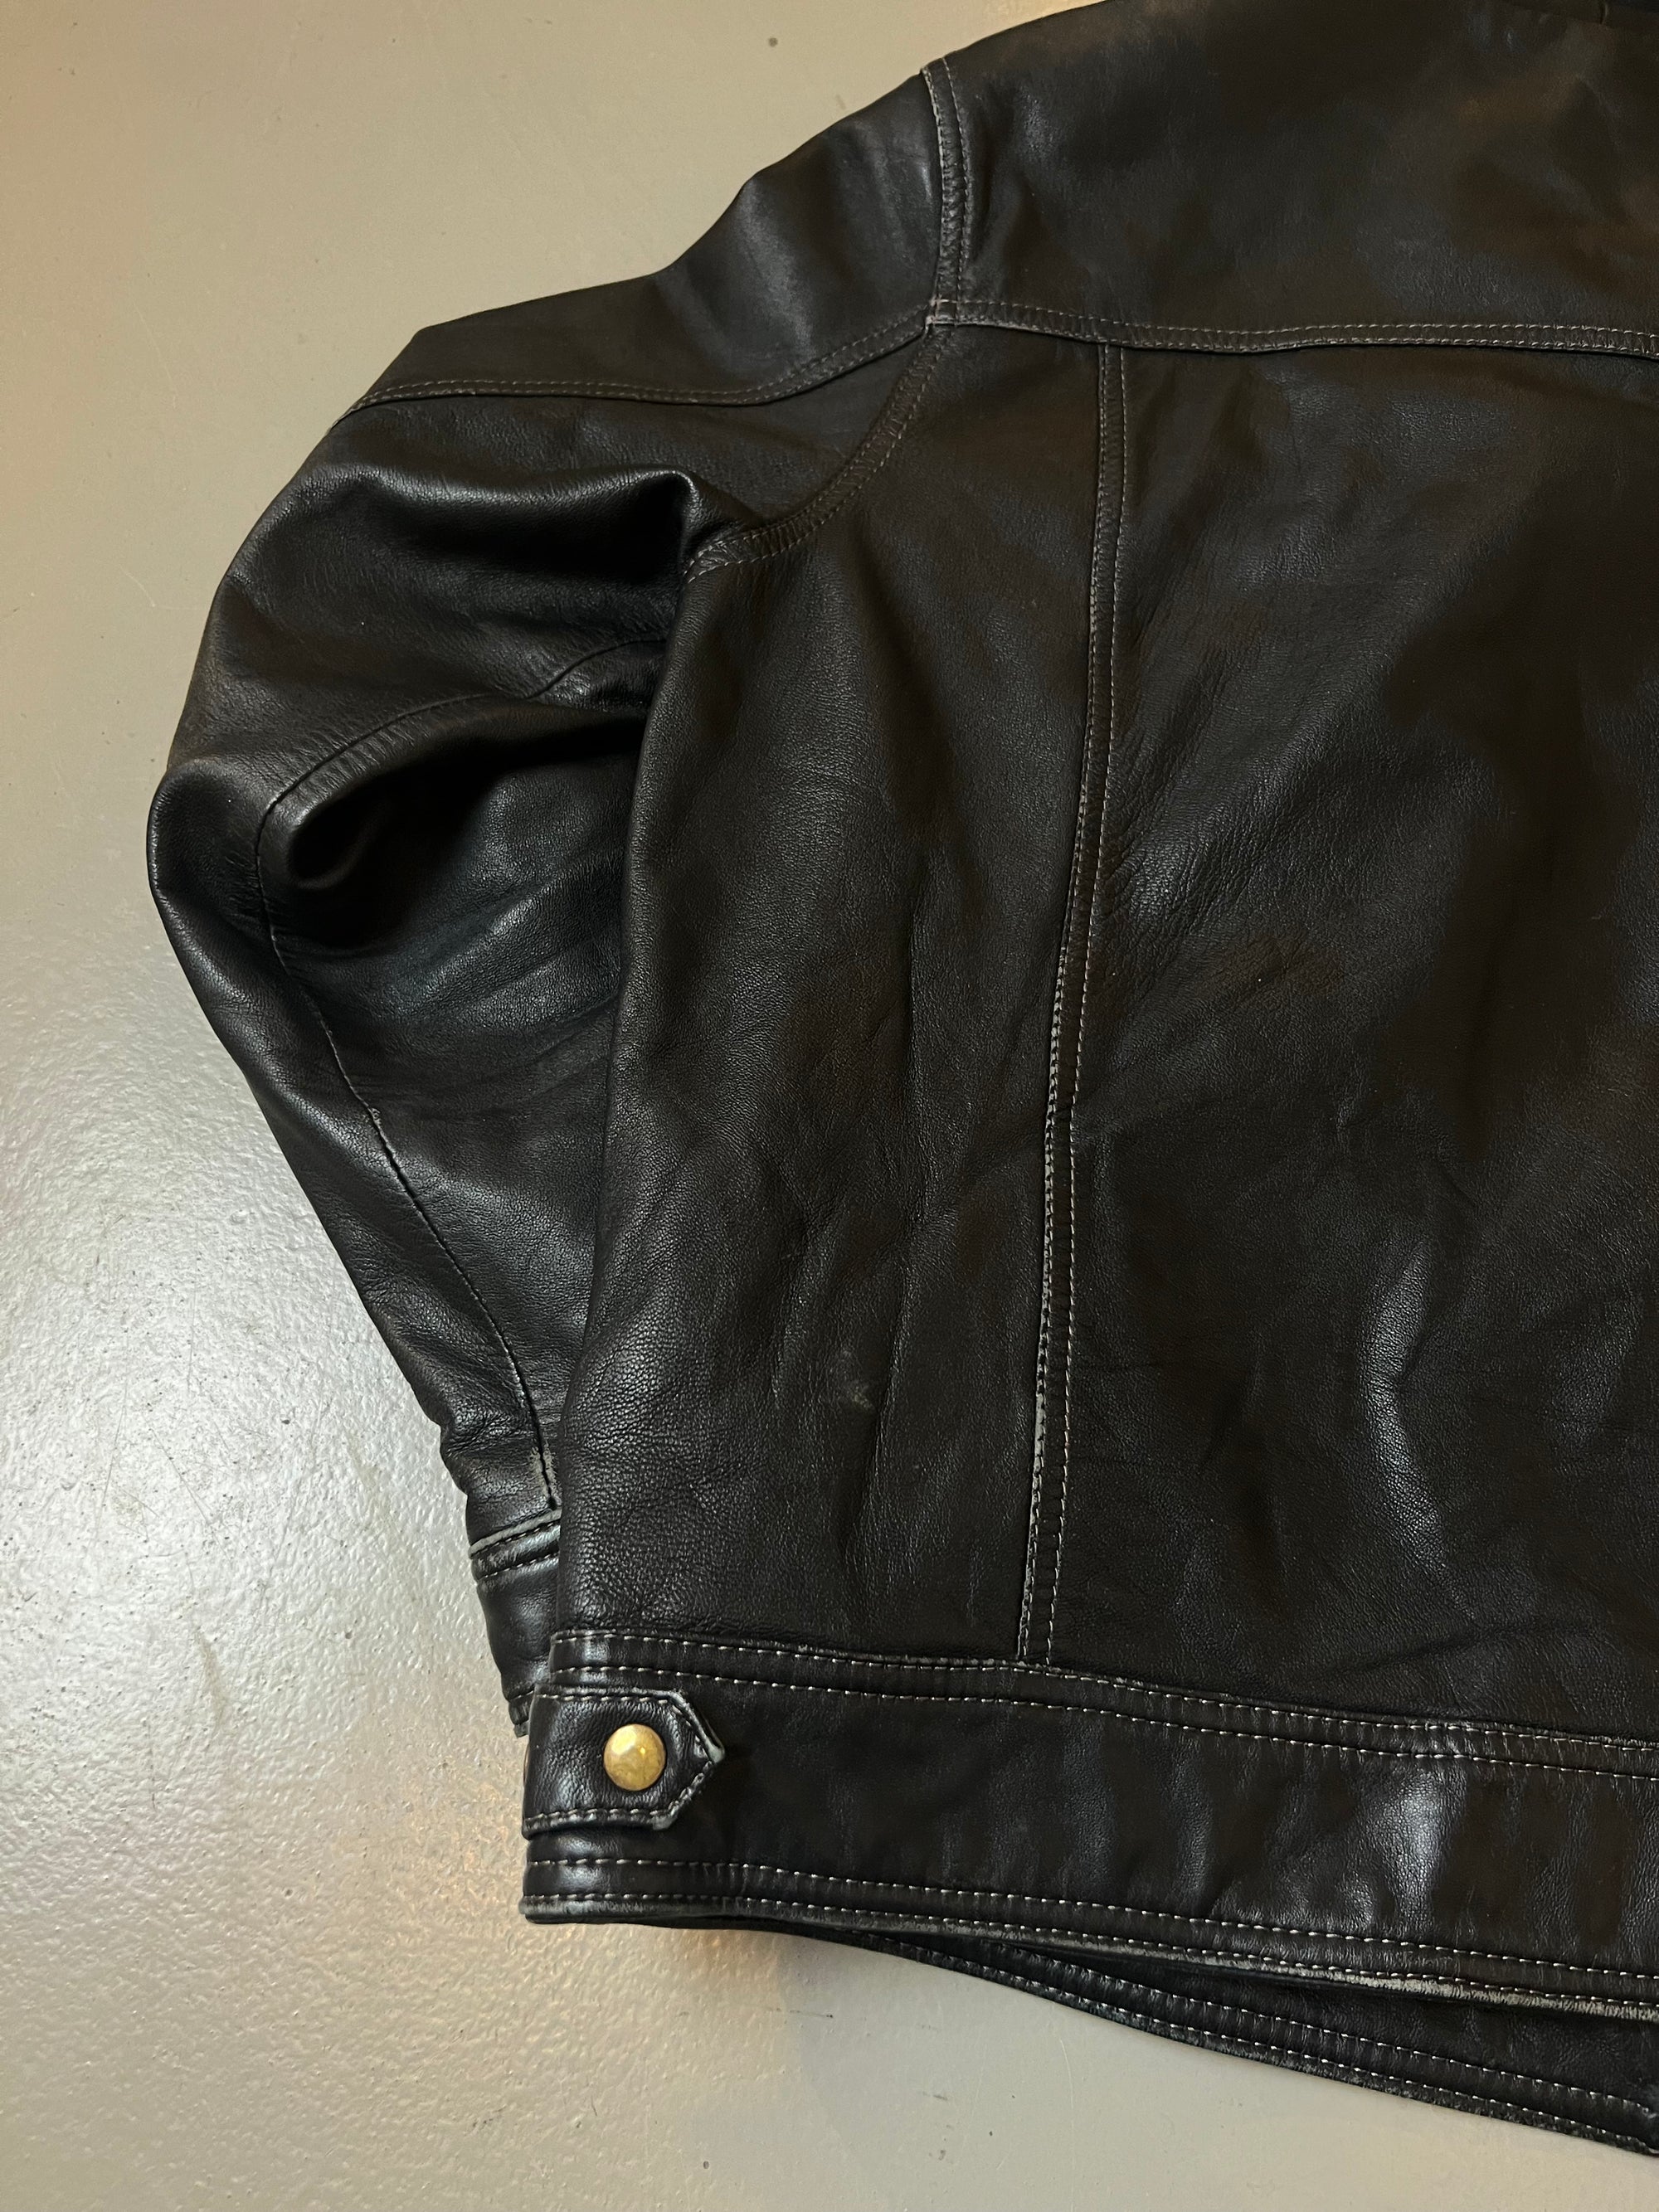 Vintage Australian Leather Bomber Jacket L/XL